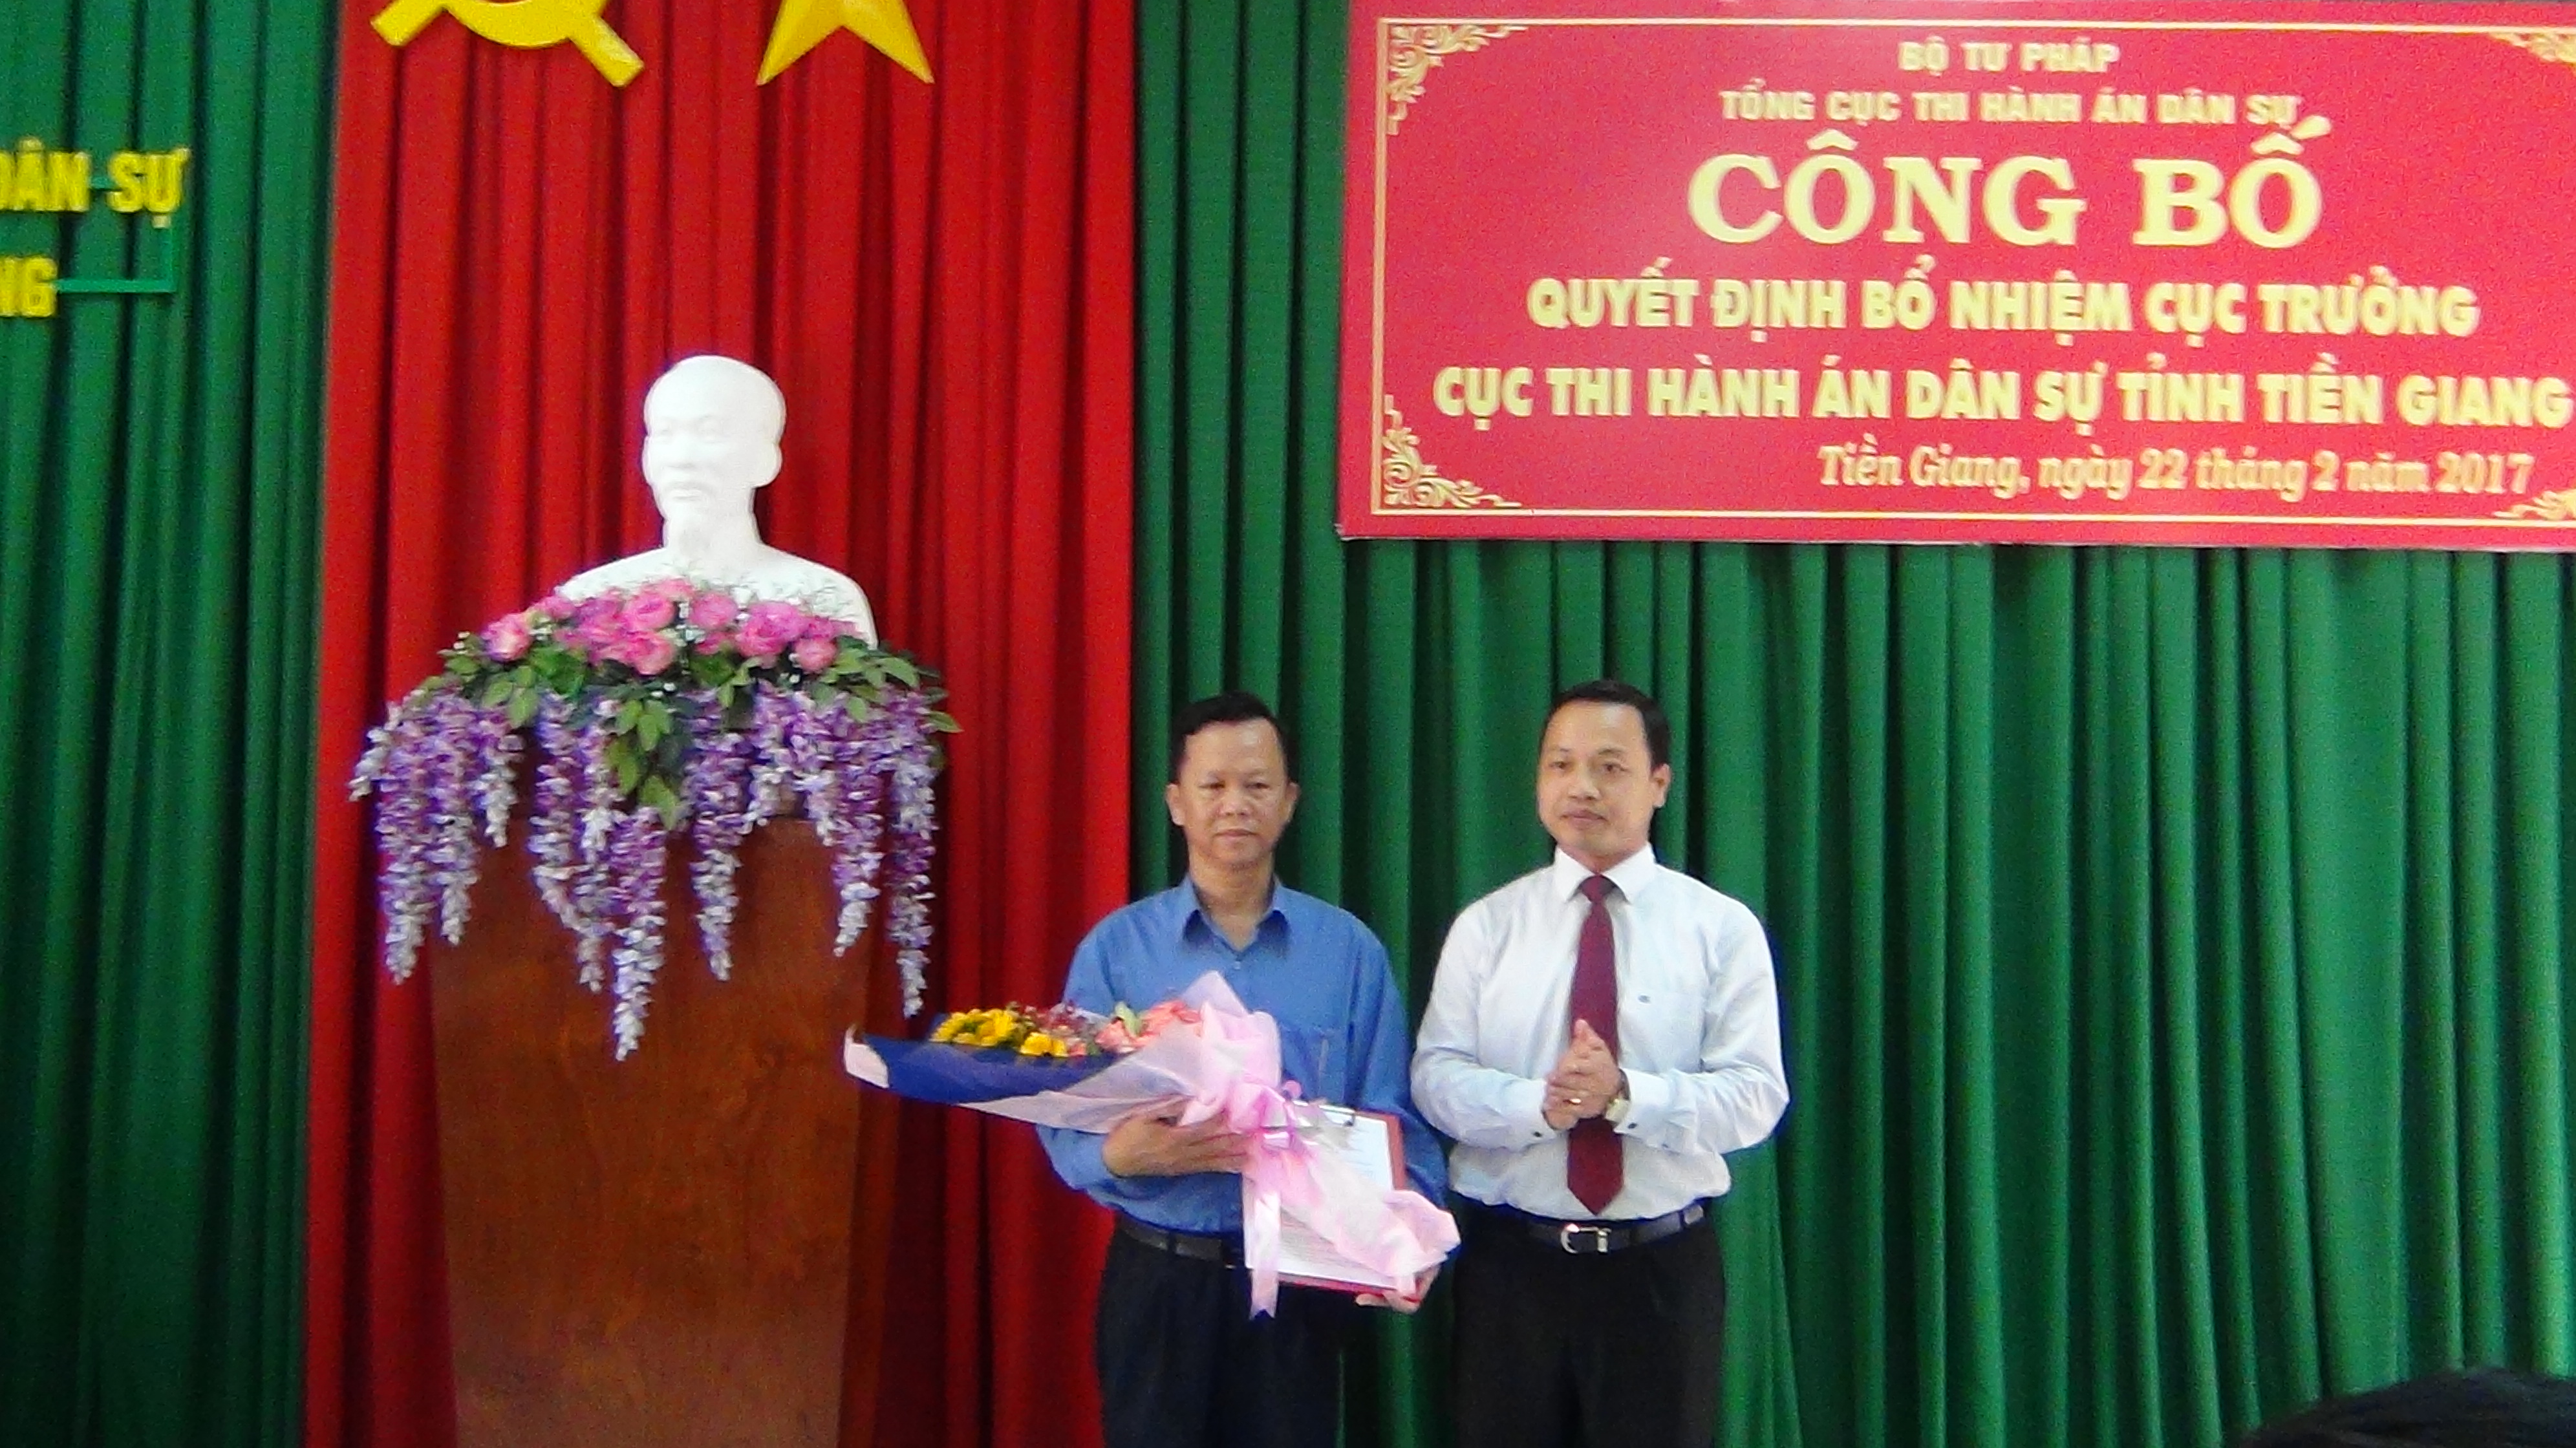 Đồng chí Trần Tiến Dũng - Thứ trưởng Bộ Tư pháp - đến làm việc tại Cục Thi hành án dân sự tỉnh Tiền Giang